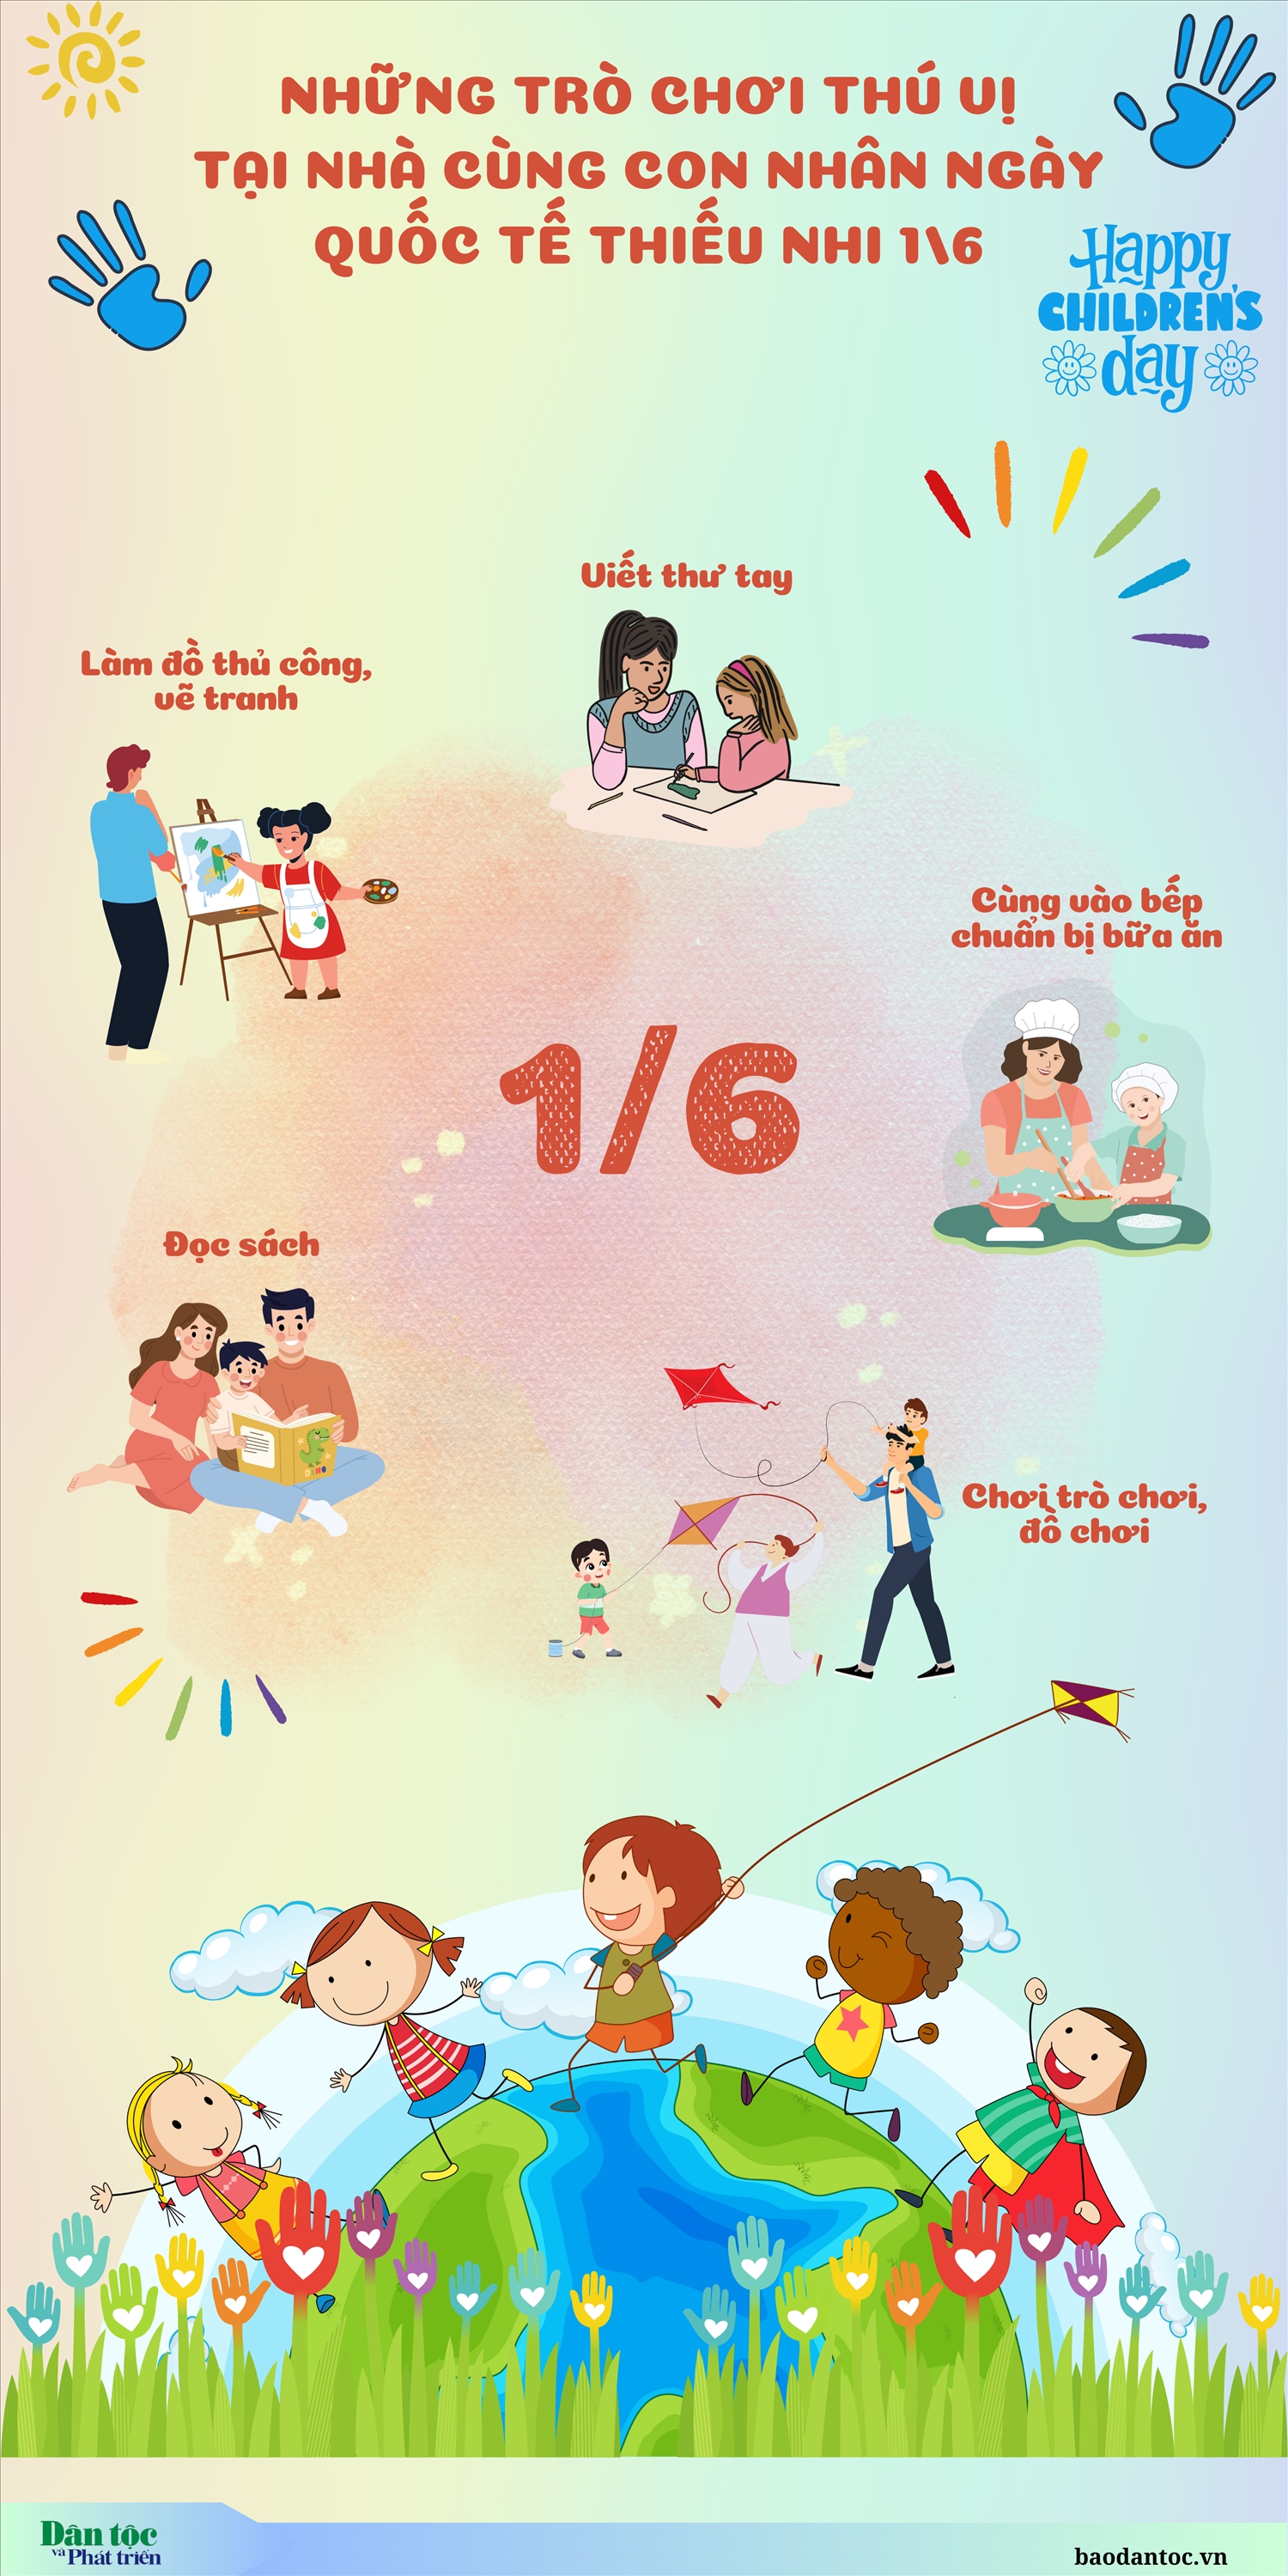 (inforgraphic) Những trò chơi thú vị tại nhà cùng con nhân Ngày Quốc tế thiếu nhi 1/6